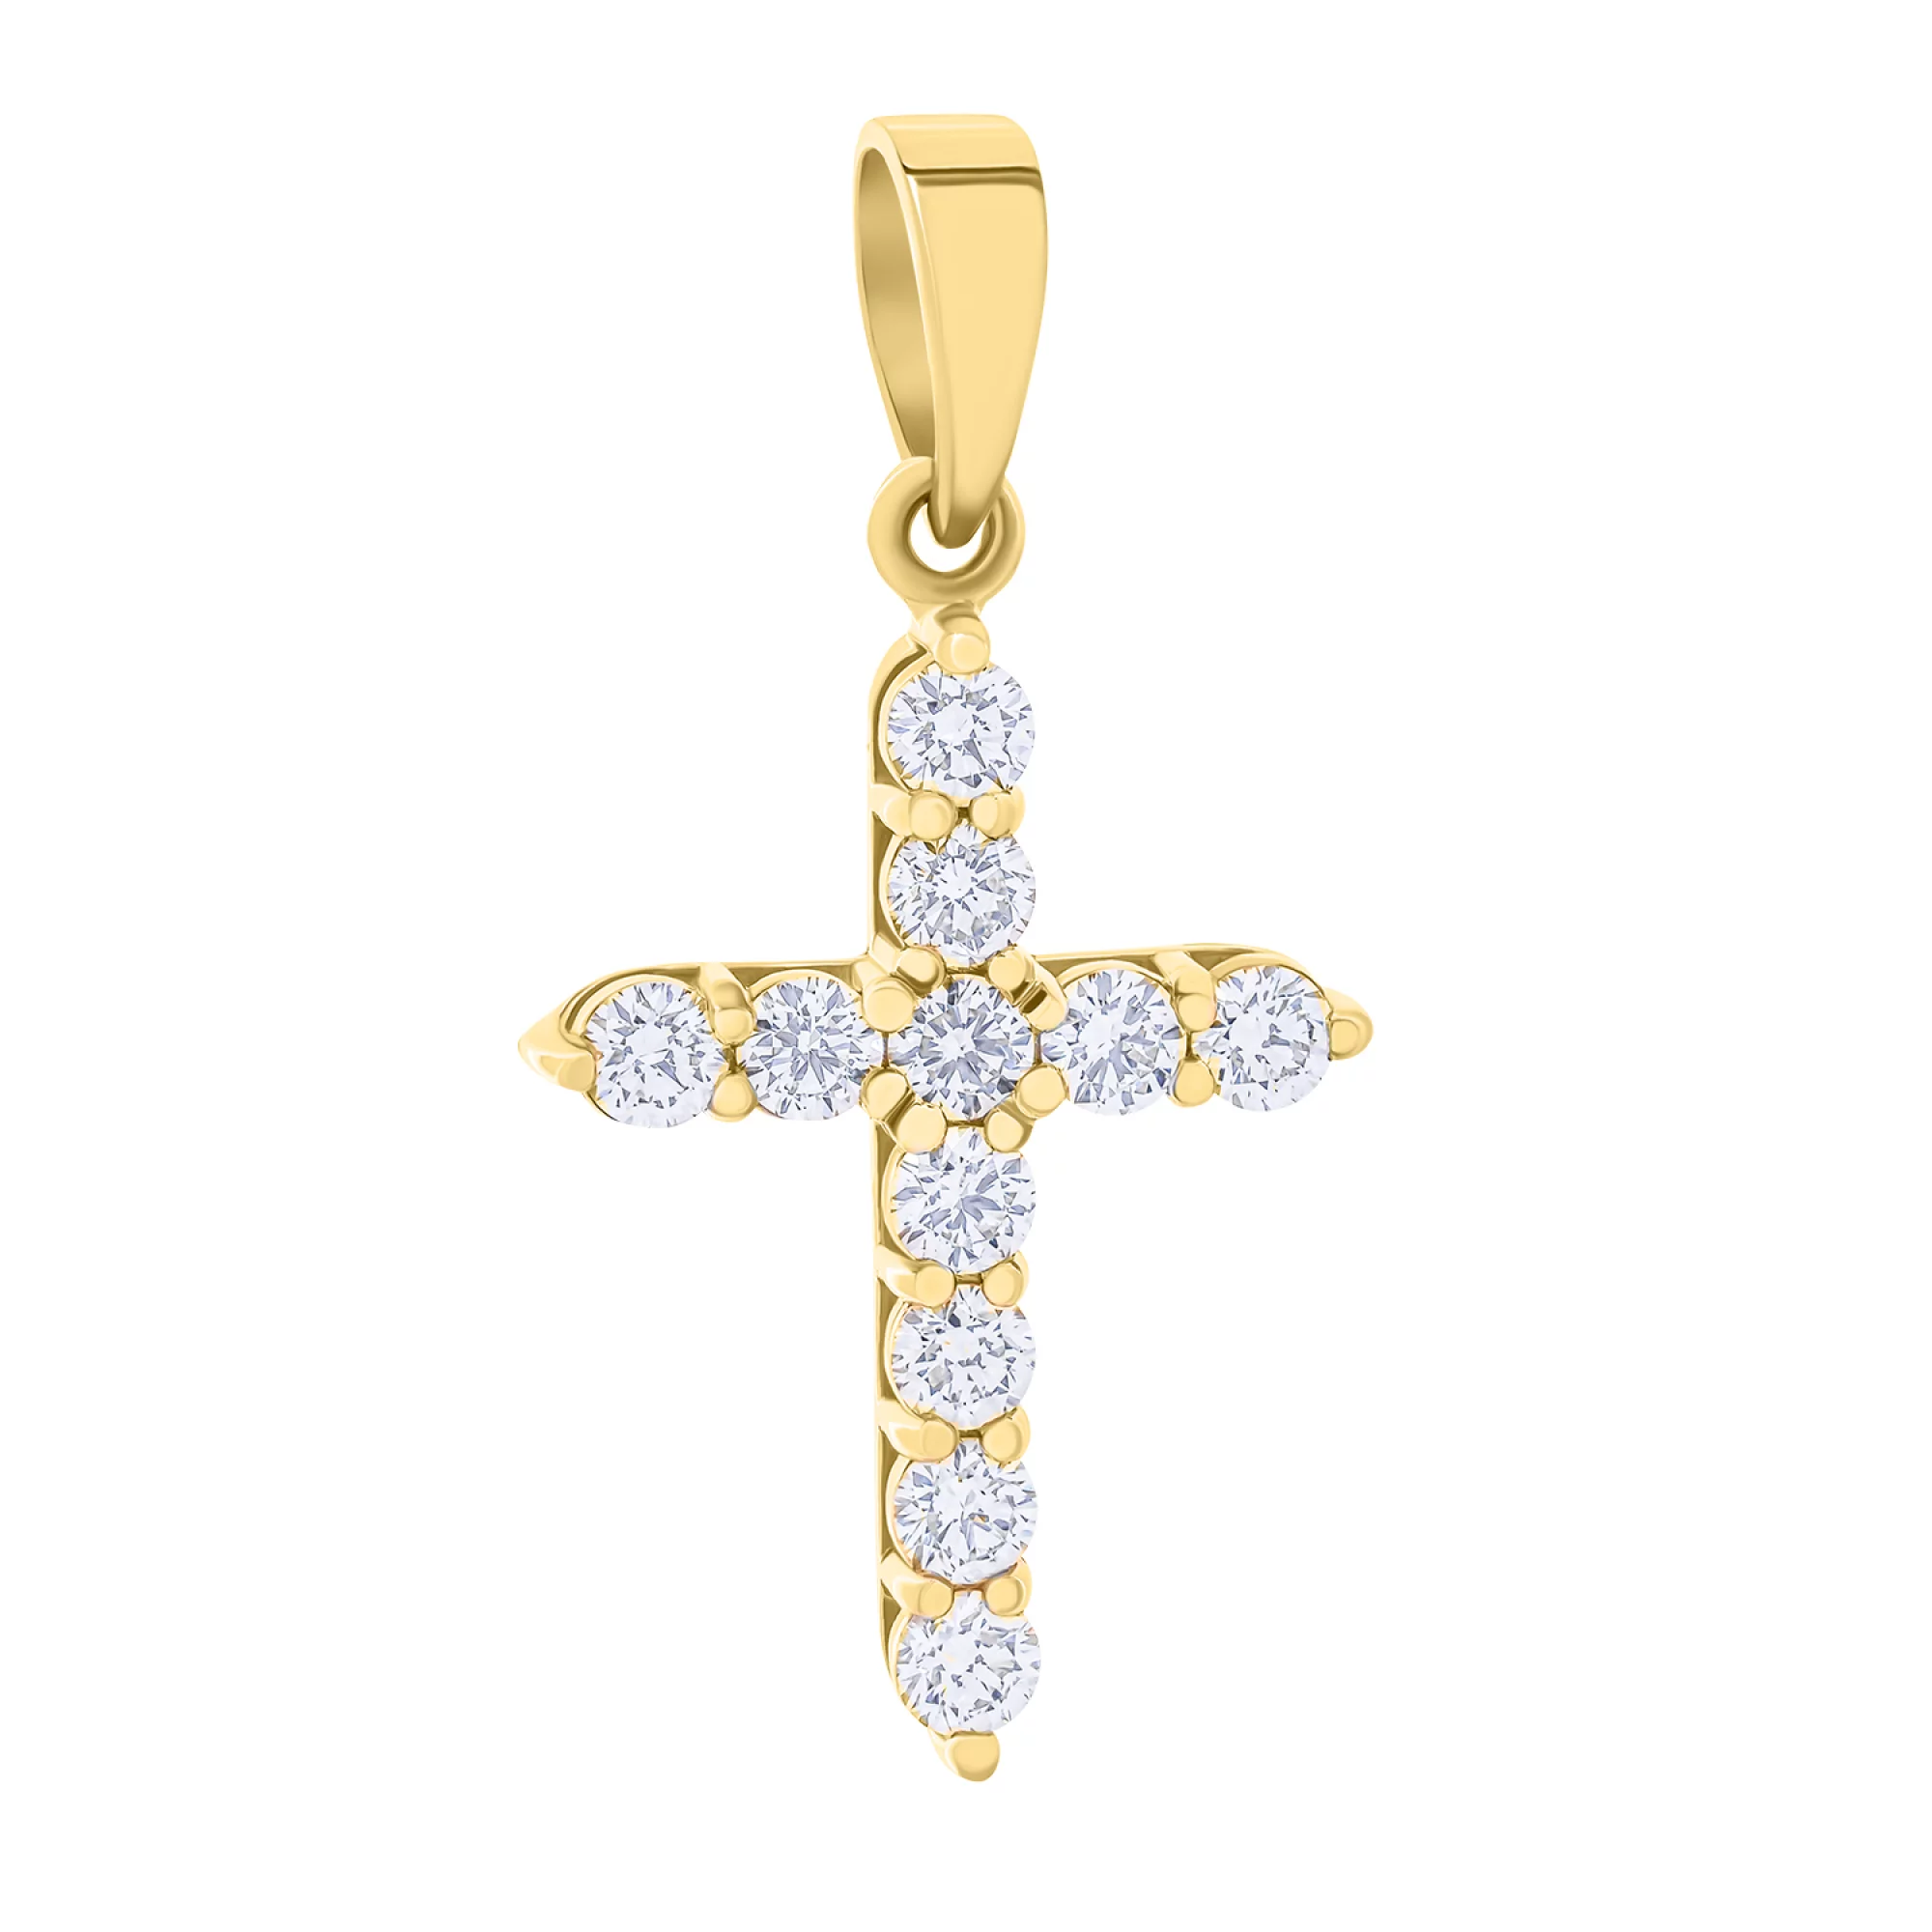 Декоративный крестик в желтом золоте с дорожкой фианитов - 1736226 – изображение 1